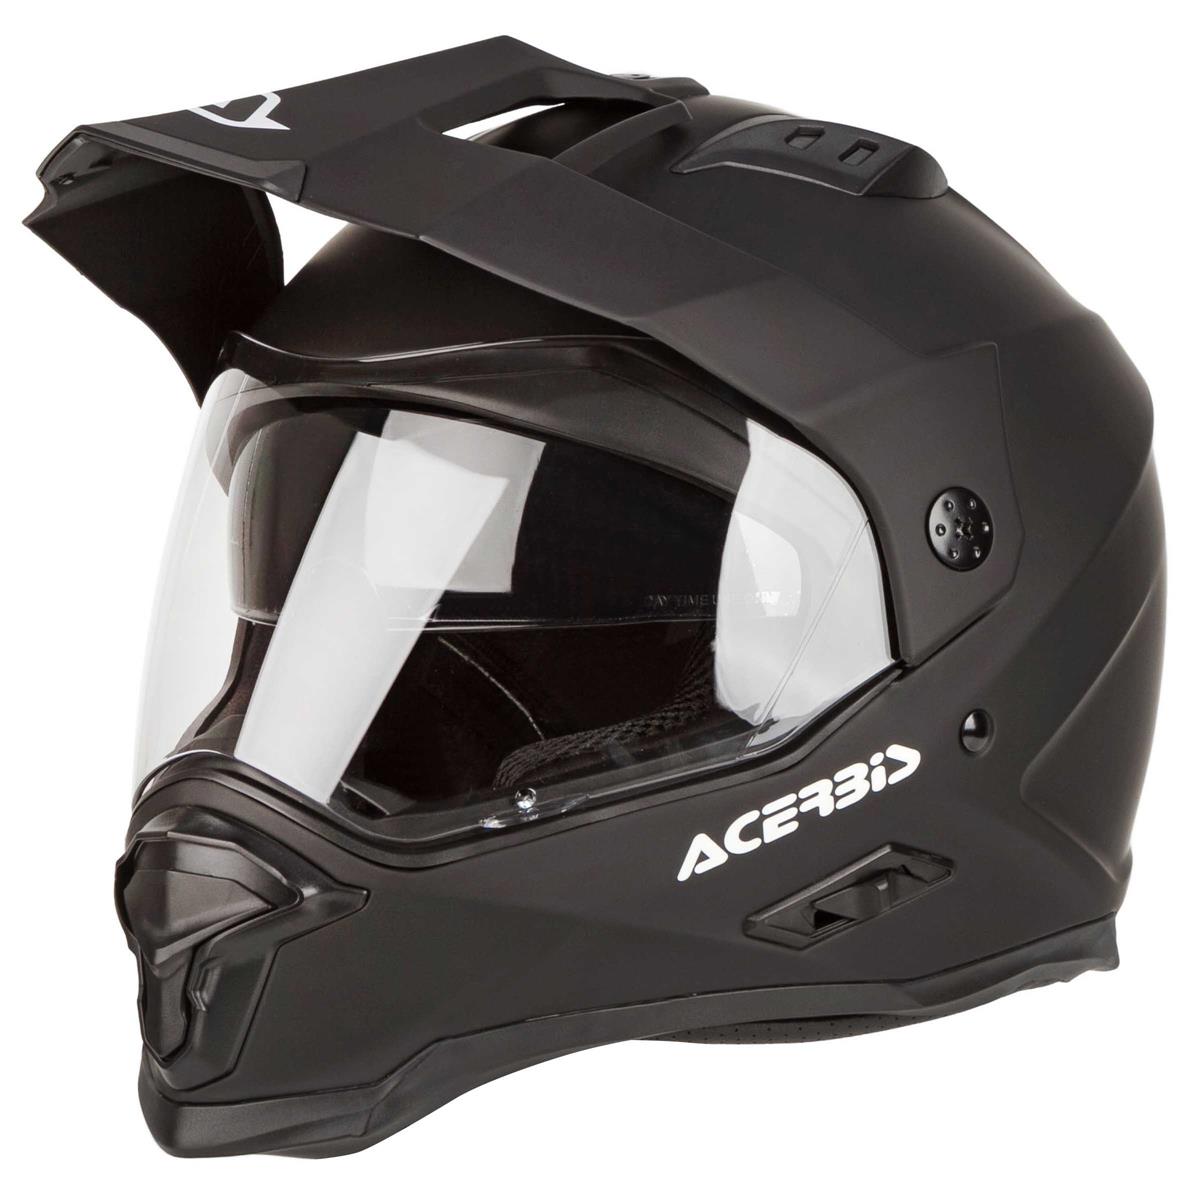 Acerbis Adventure Helmet Reactive Black